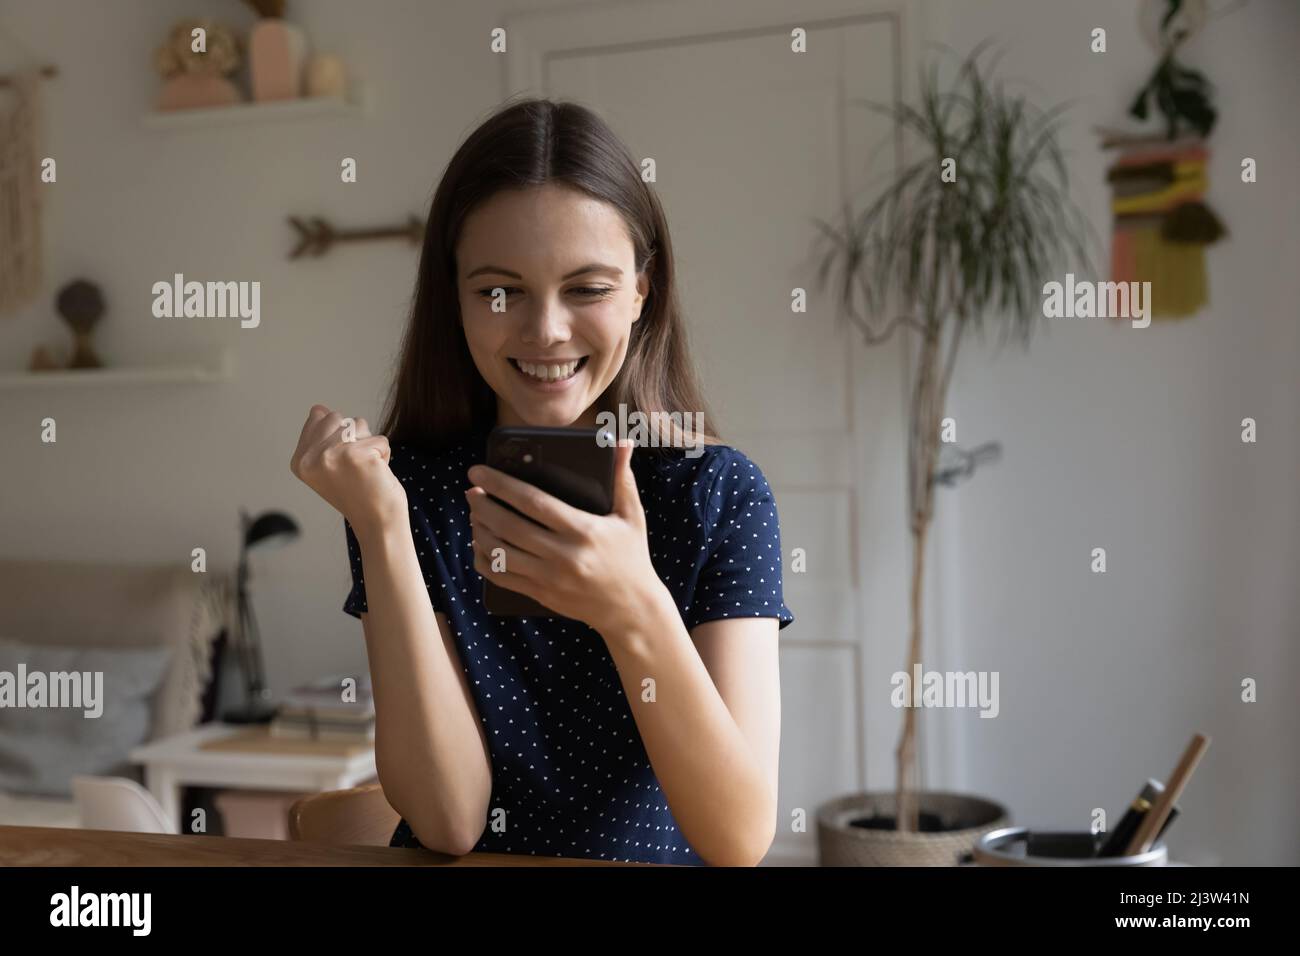 Frau, die auf den Handybildschirm starrt, fühlt sich glücklich über gute Nachrichten Stockfoto